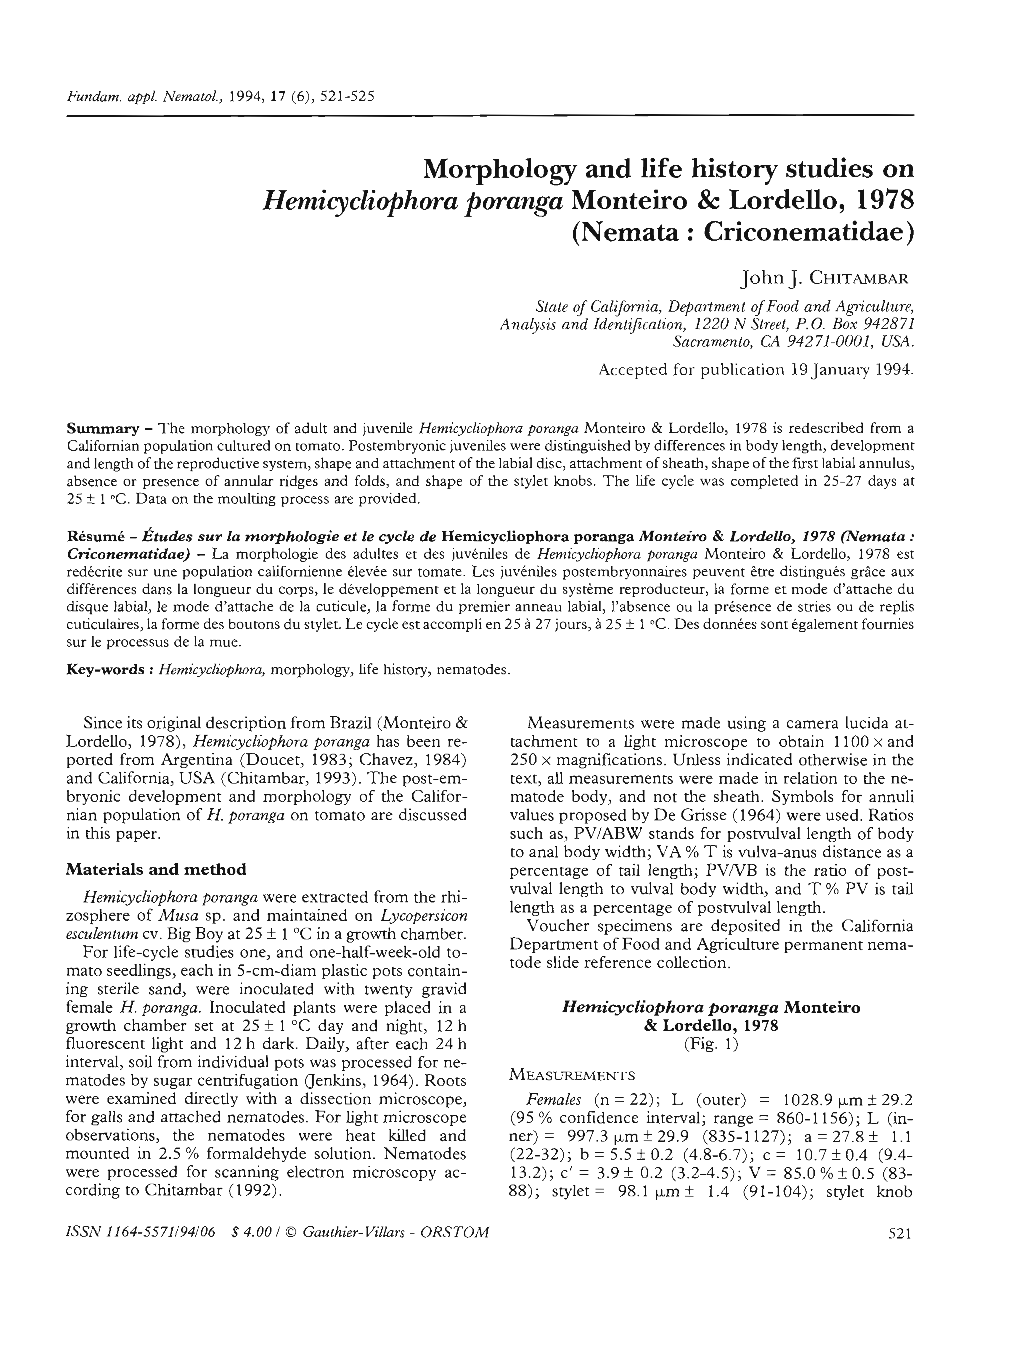 Morphology and Life History Studies on Hemicycliophora Poranga Monteira